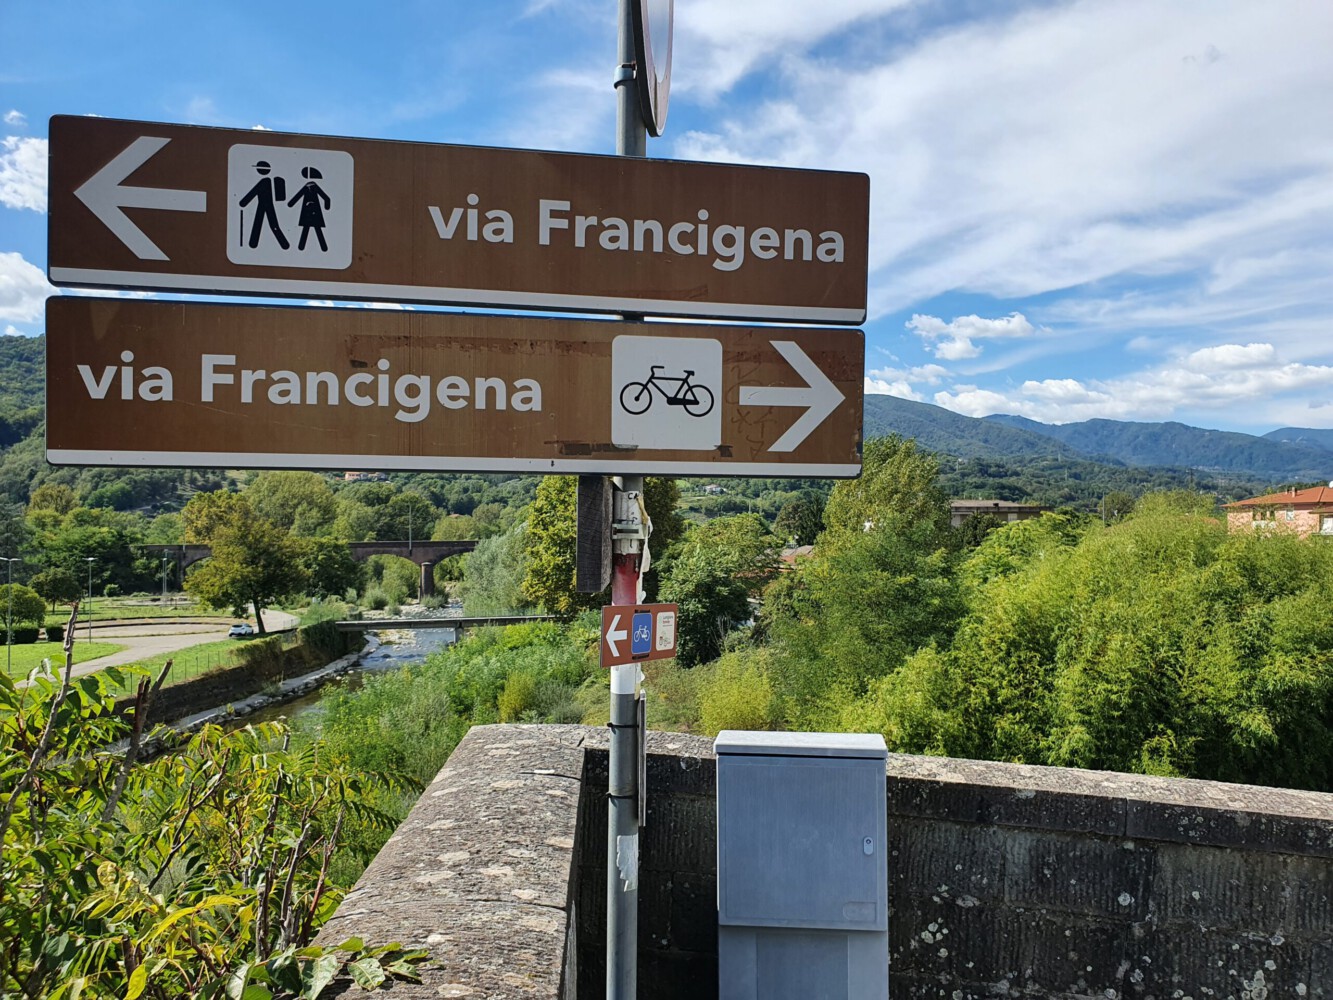 Signs for the via Francigena.